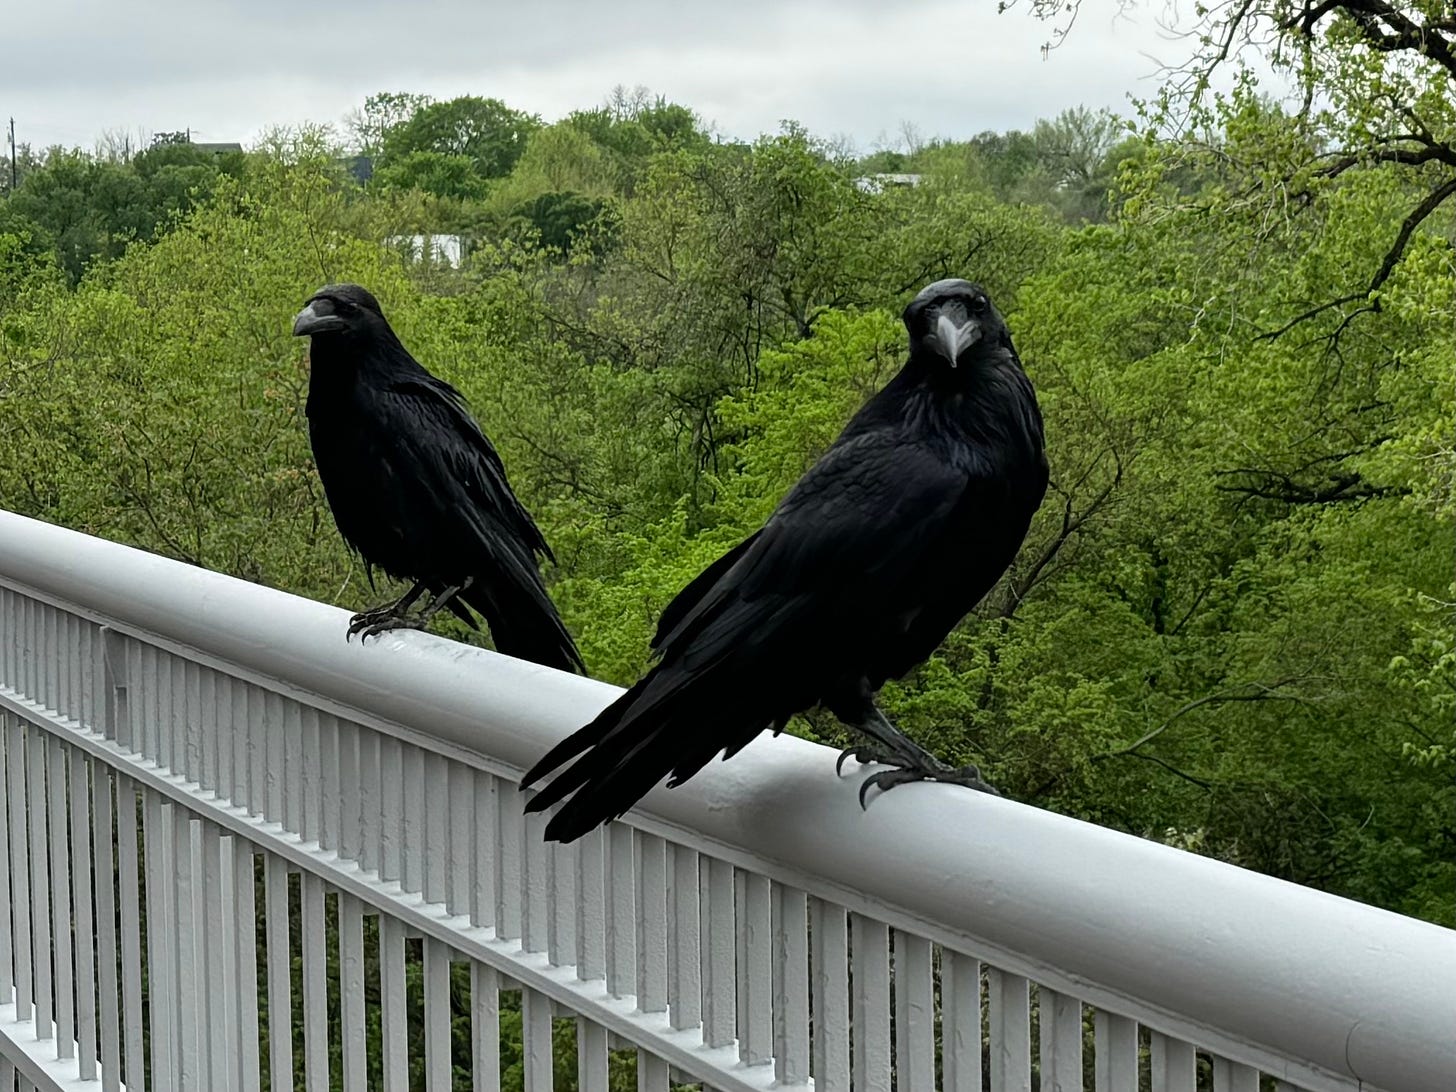 Ravens on a railing